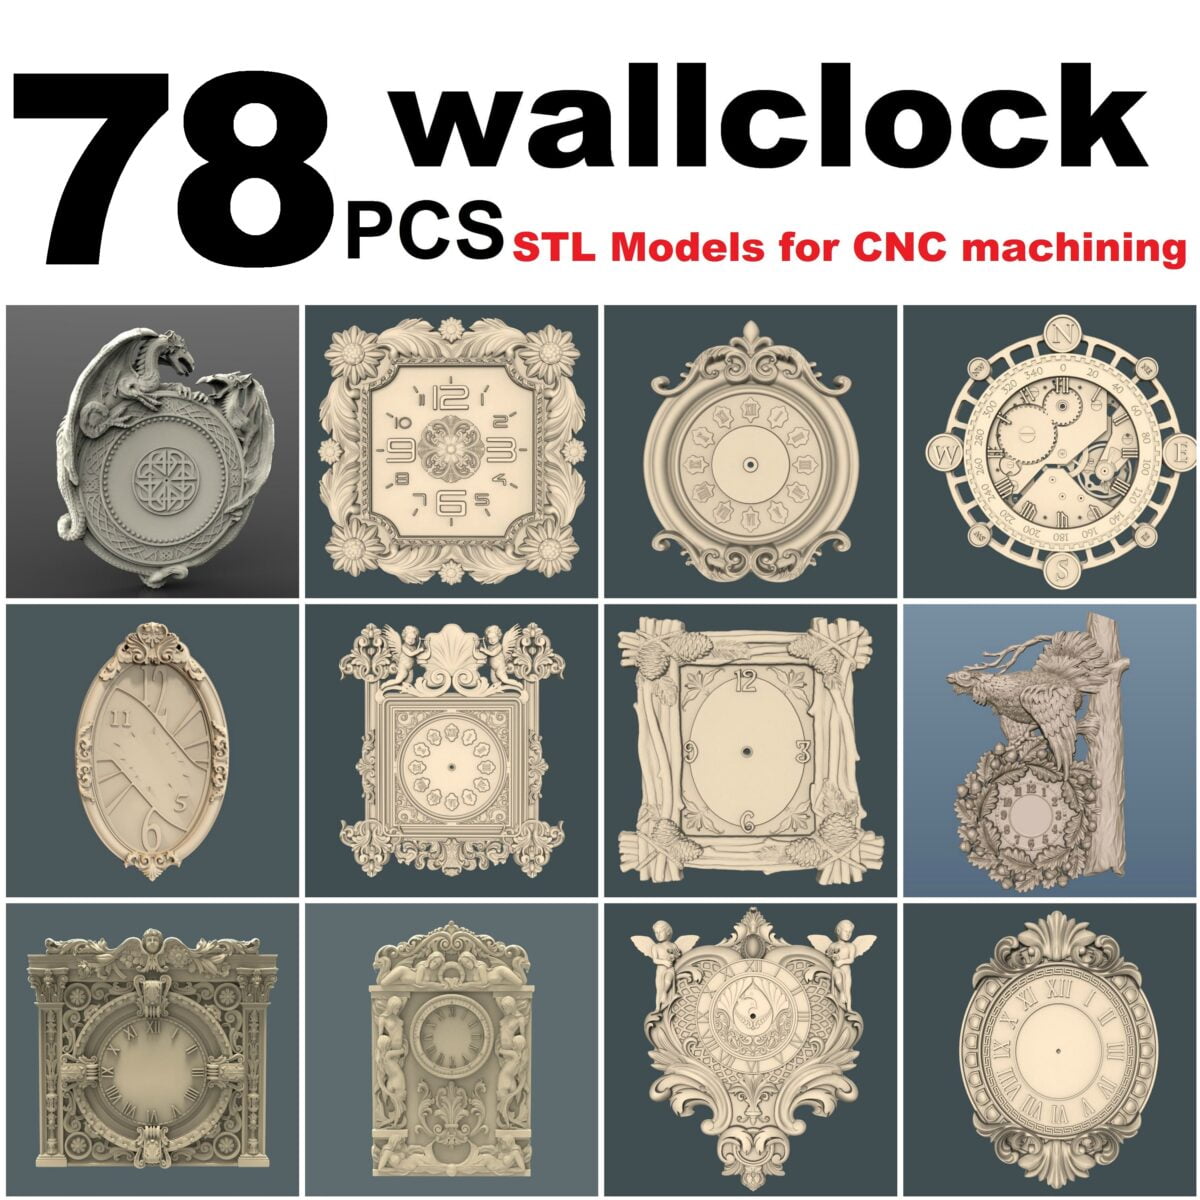 40 pcs Wall clock models STL files set # 2 Model for CNC Router Machine 